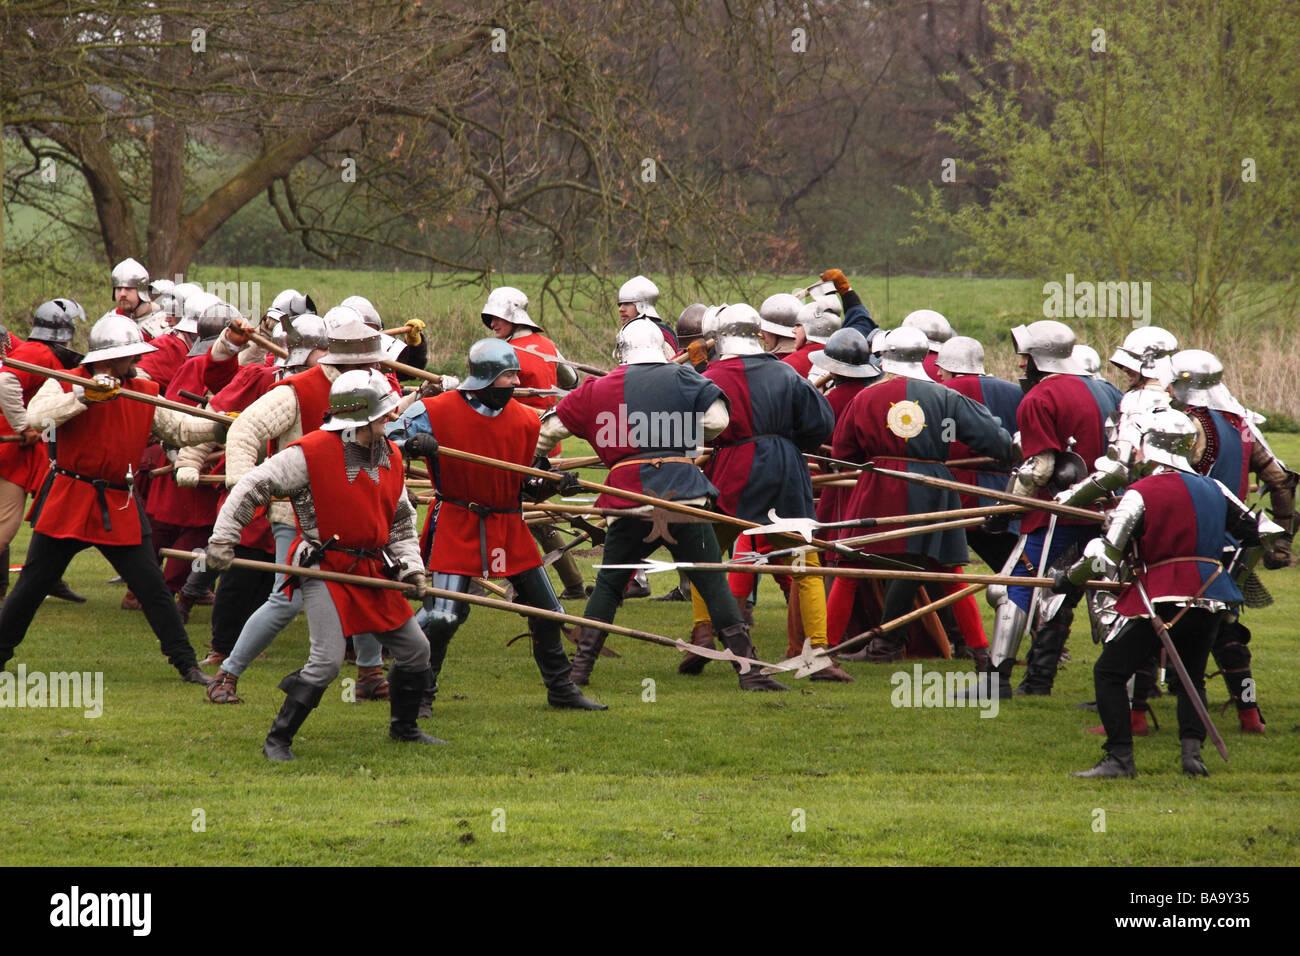 Rievocazione dell'assedio del castello di Warwick nel XV secolo con una battaglia tra la yorkists e lancastrians Foto Stock